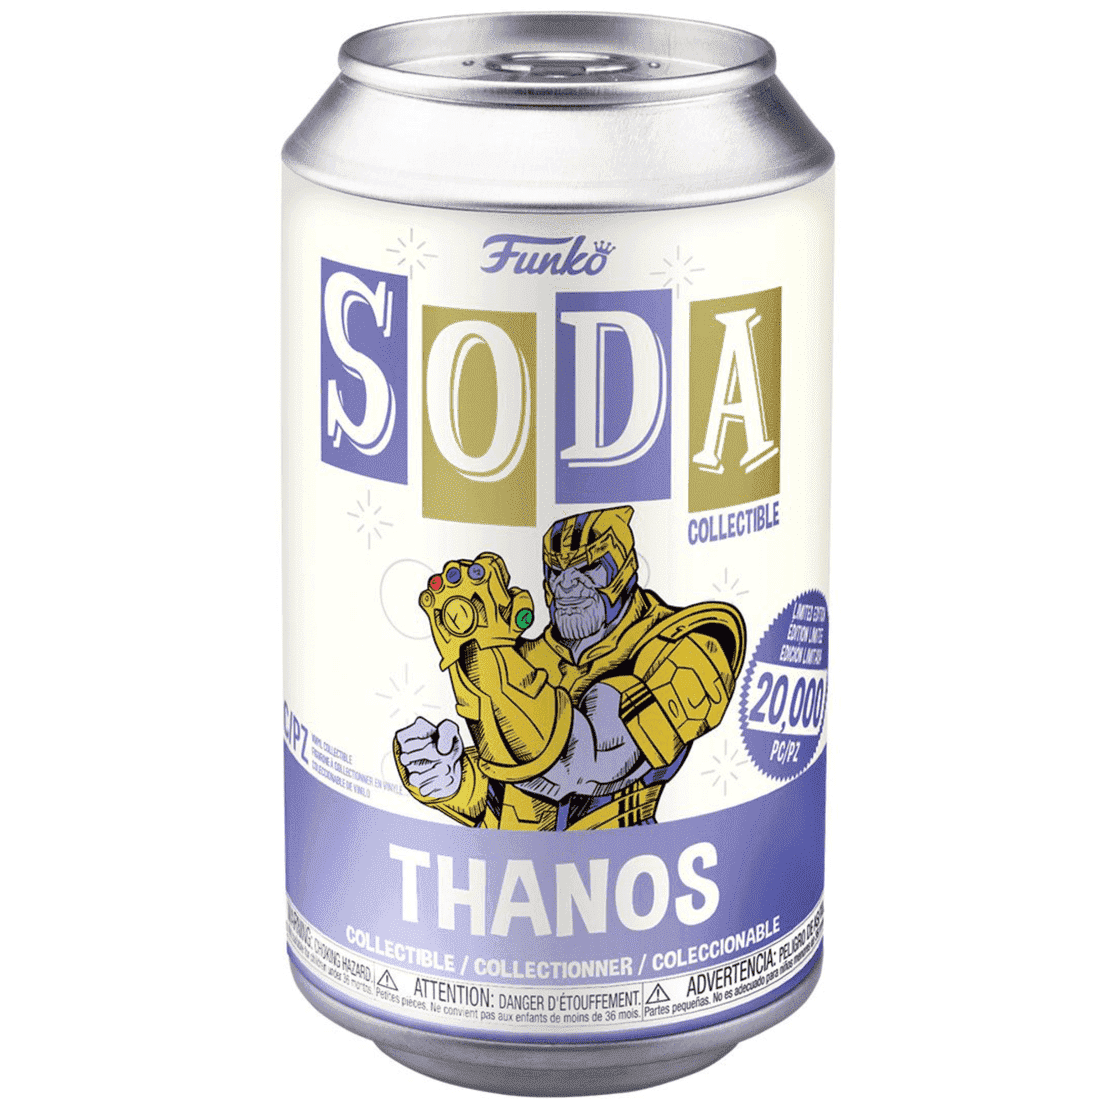 ***Edición Limitada*** Funko Soda Marvel, Thanos